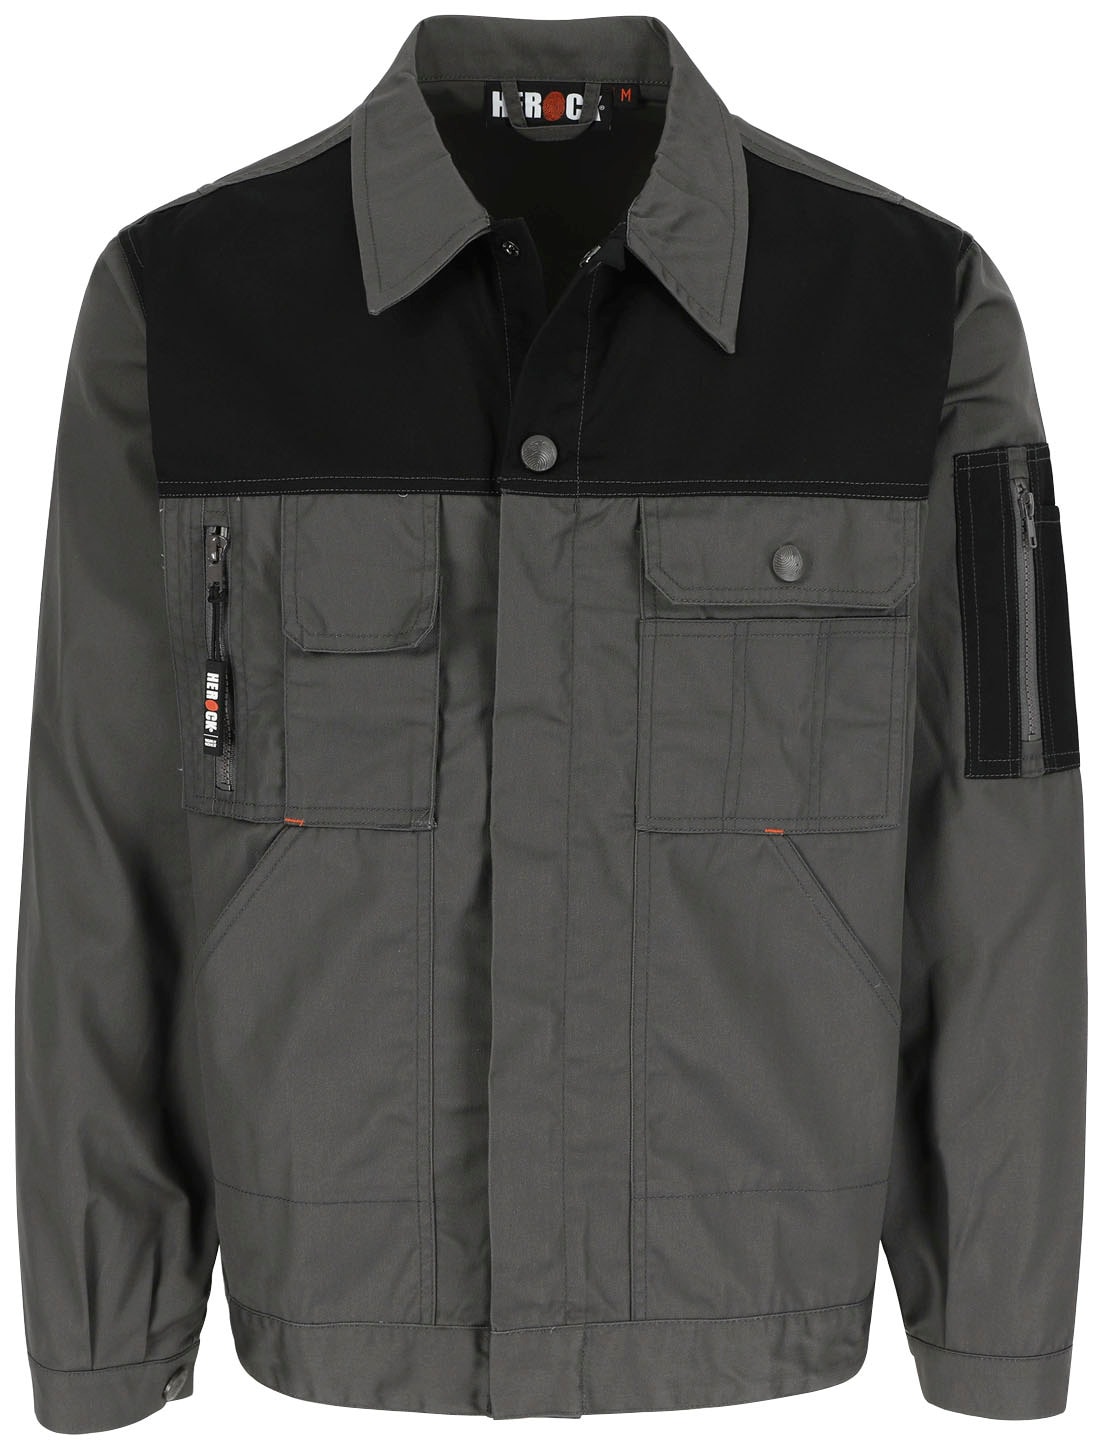 online »Aton Bündchen Arbeitsjacke Jacke mit Herock vielen bei Taschen Wasserabweisende einstellbare Jacke«, und